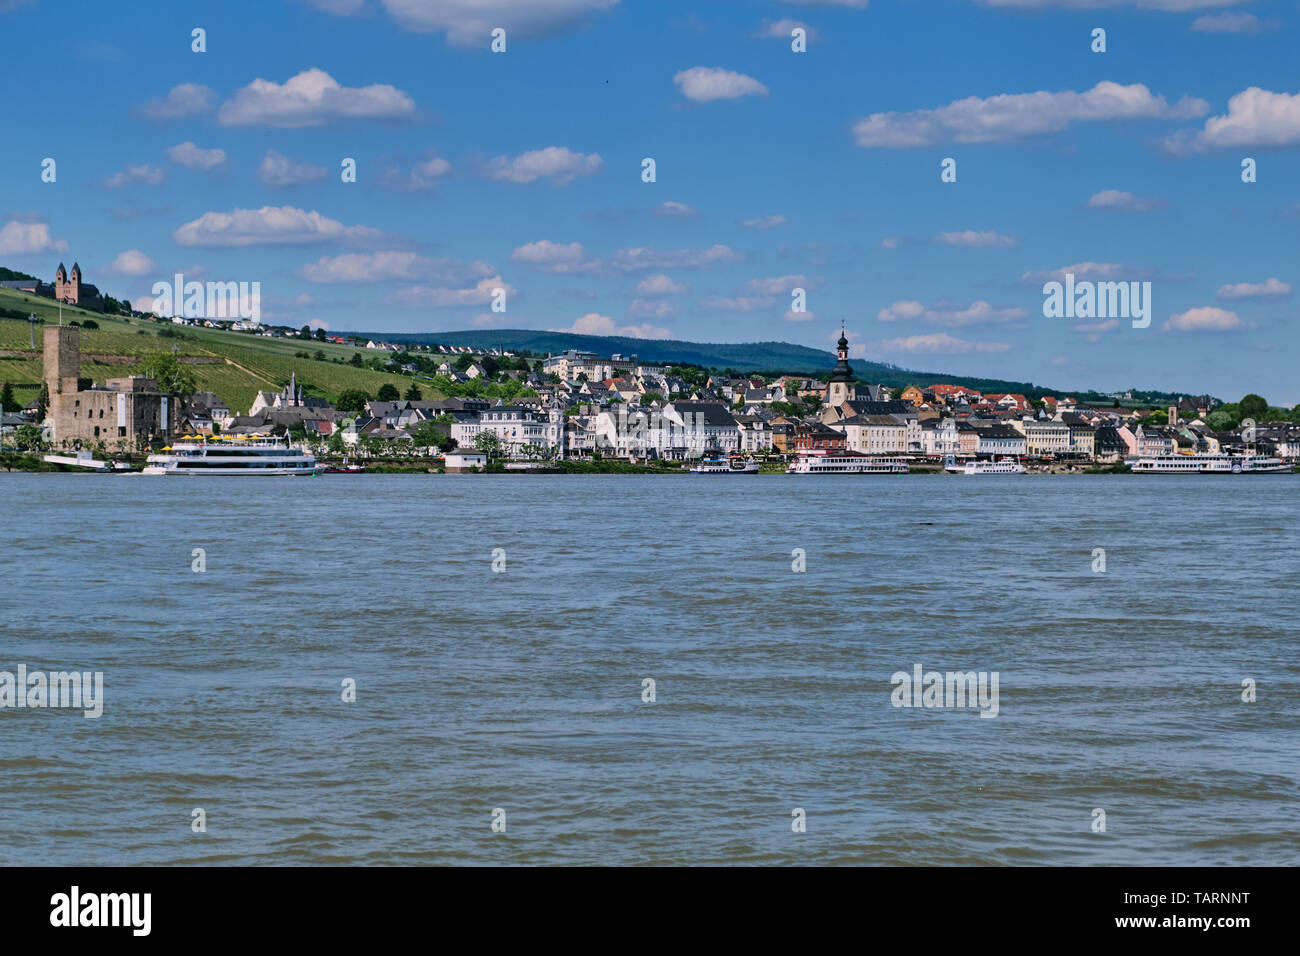 Ruedesheim, Germany - May 26, 2019: city panorama of Ruedesheim at the river rhine Stock Photo